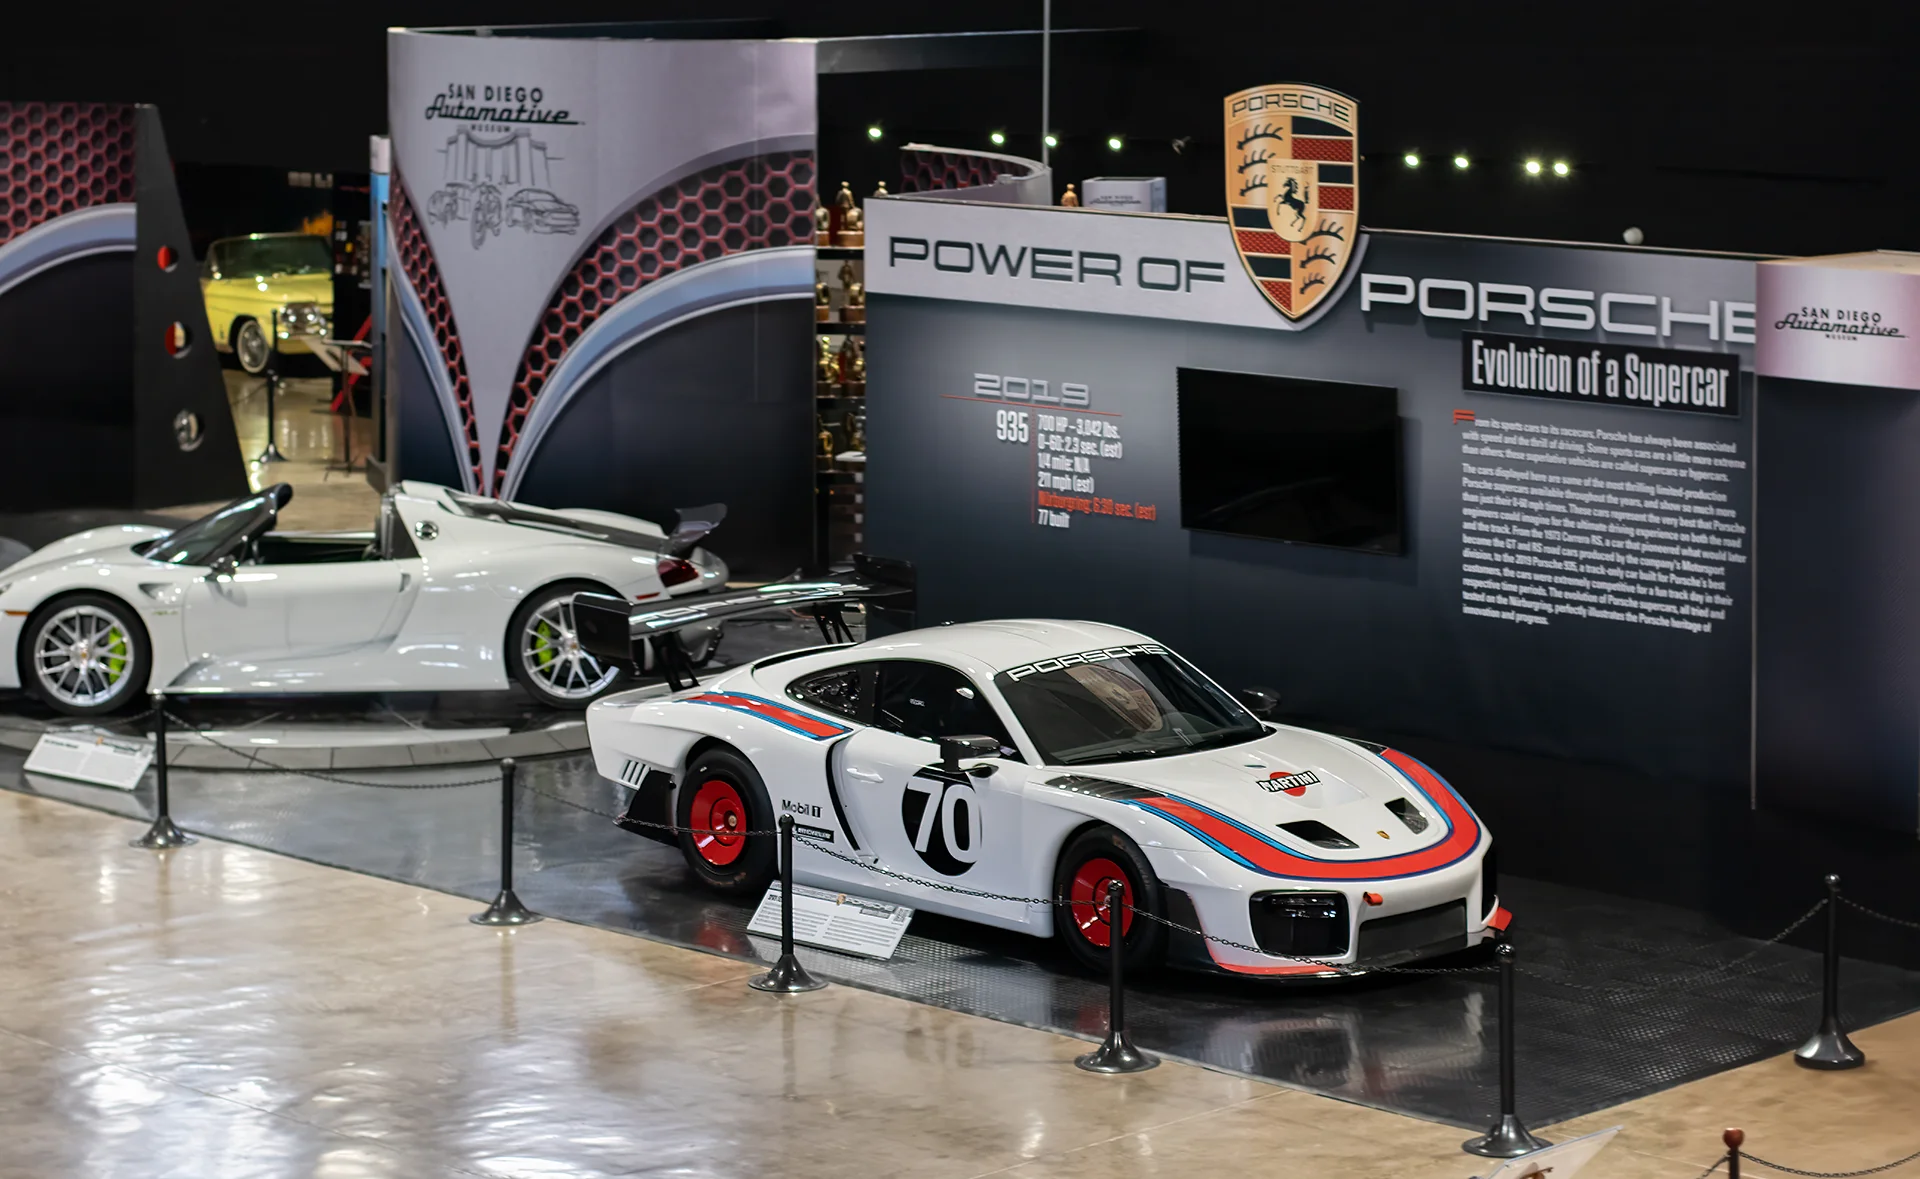 Power of Porsche: Evolution of a Supercar